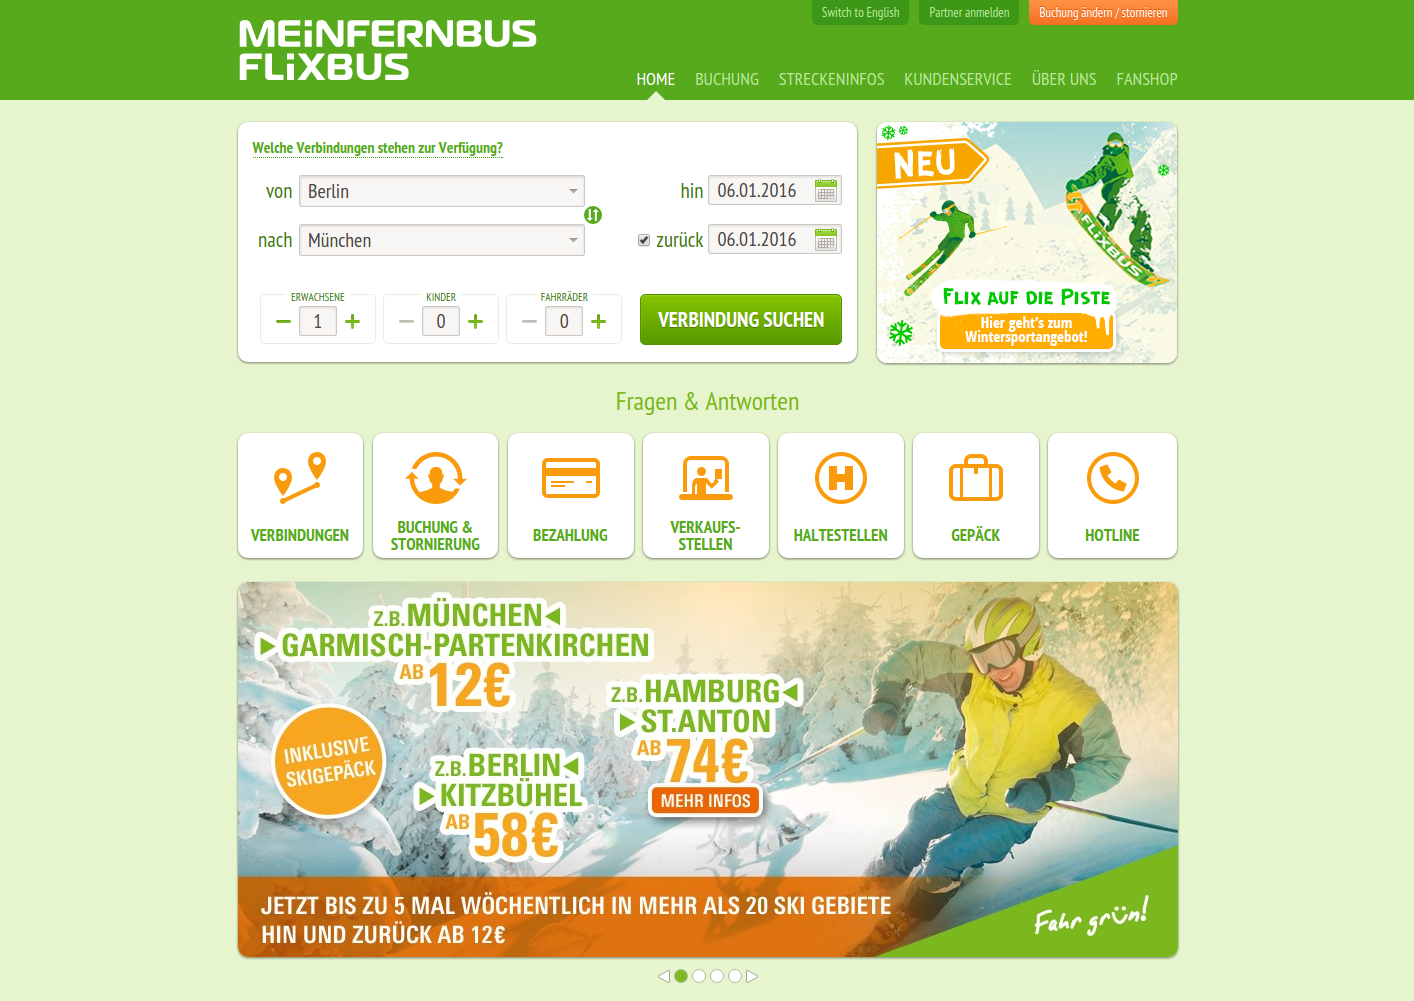 Сайт транспортной компании MeinFernbus сделан на Symfony2